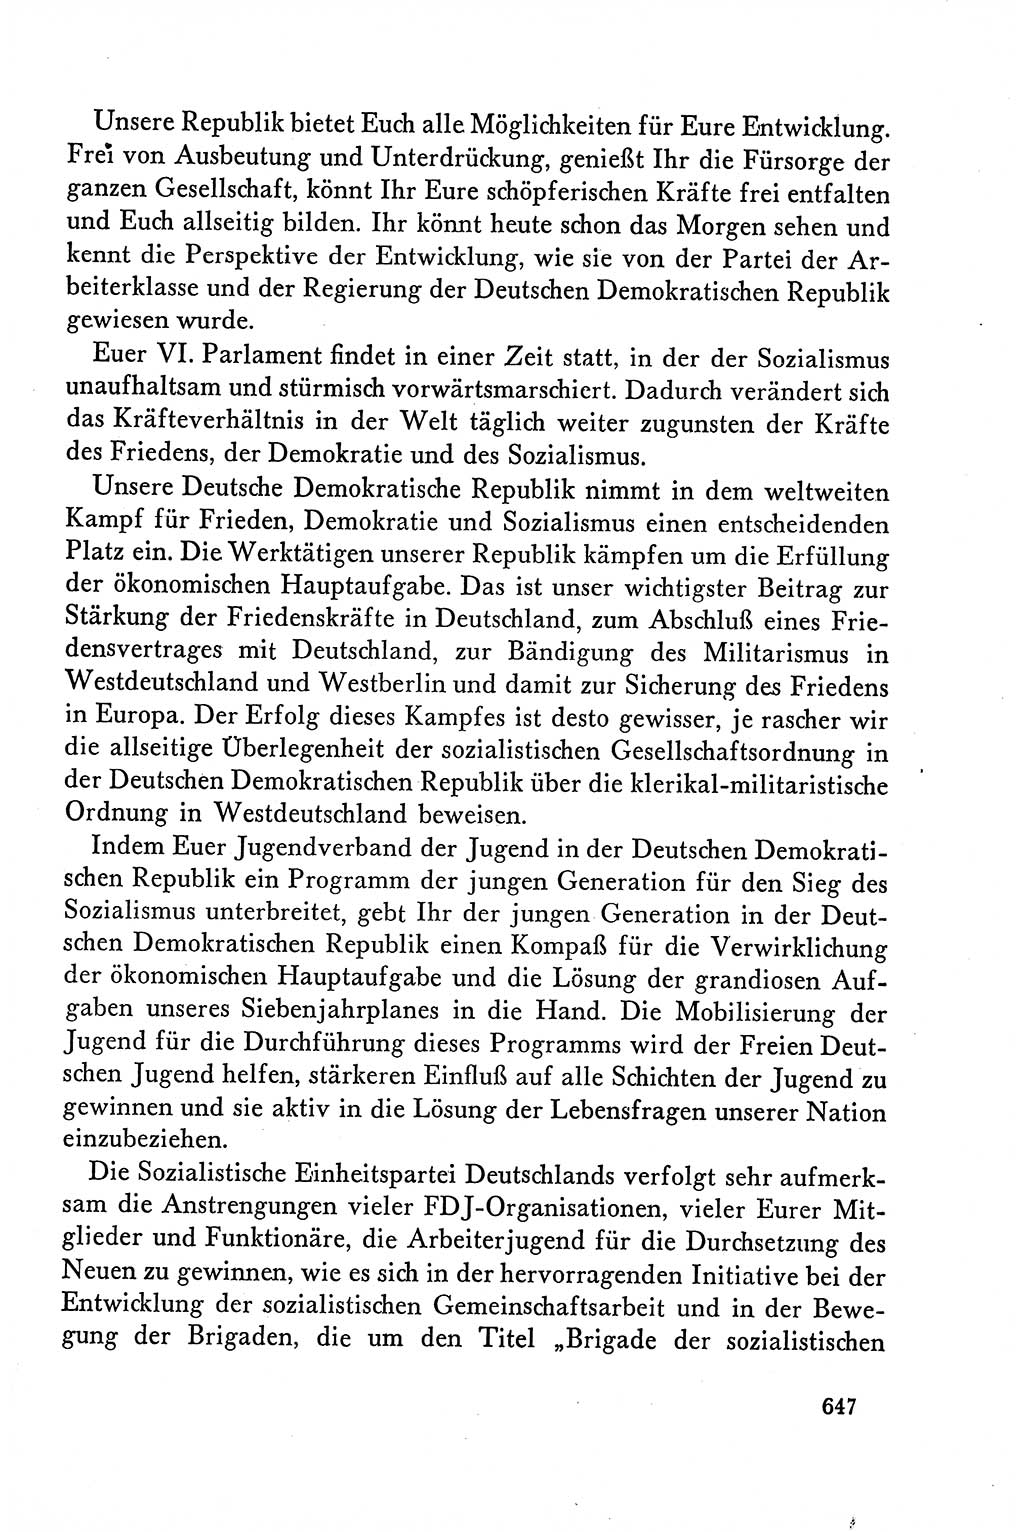 Dokumente der Sozialistischen Einheitspartei Deutschlands (SED) [Deutsche Demokratische Republik (DDR)] 1958-1959, Seite 647 (Dok. SED DDR 1958-1959, S. 647)